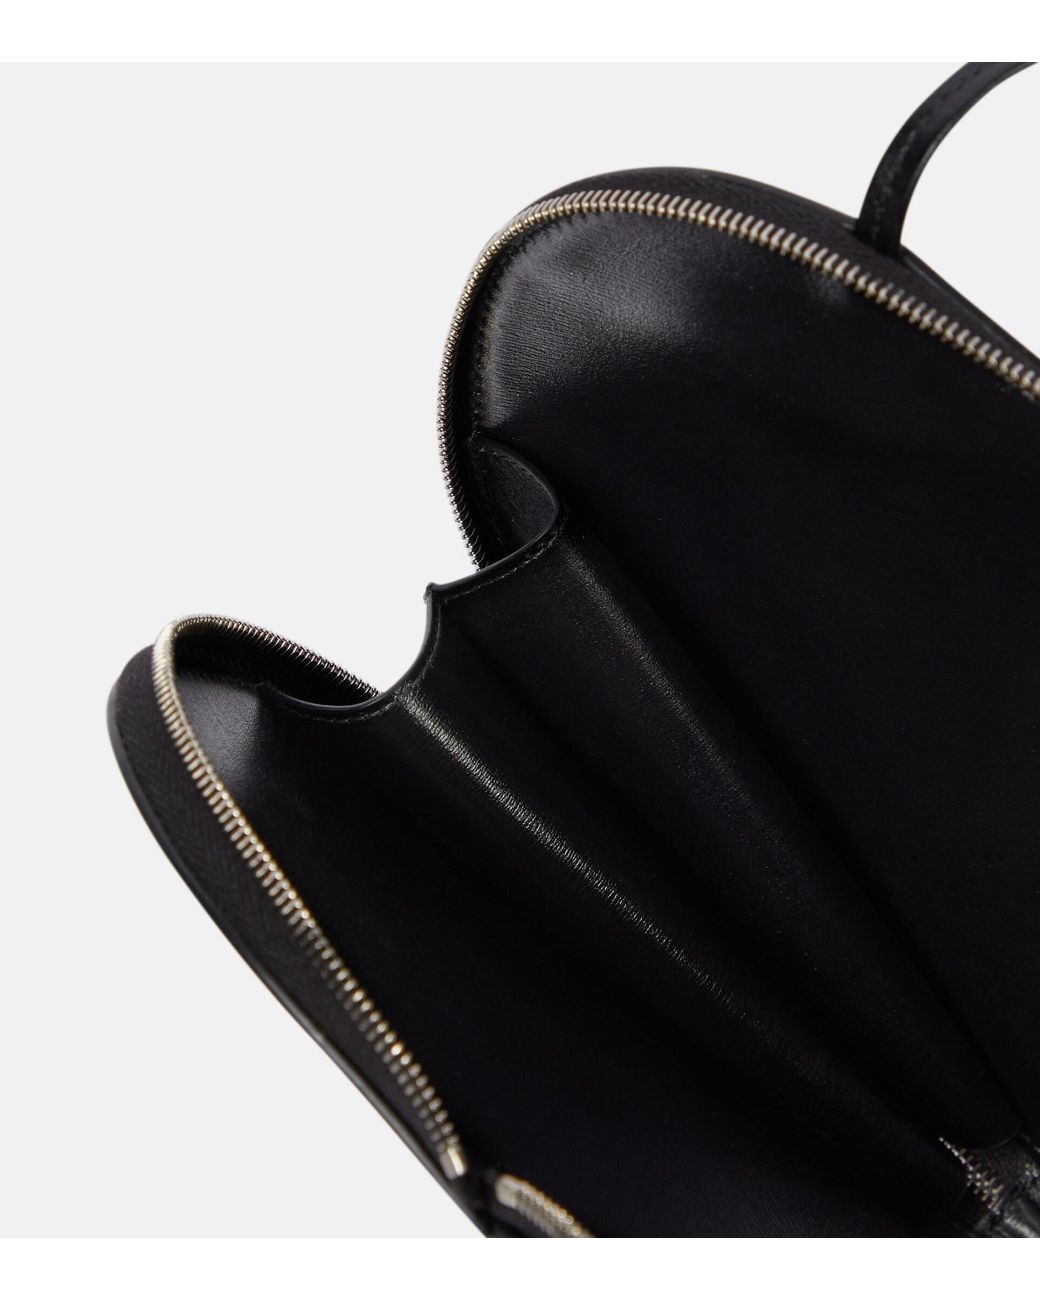 Le Coeur Studded Leather Shoulder Bag in Black - Alaia